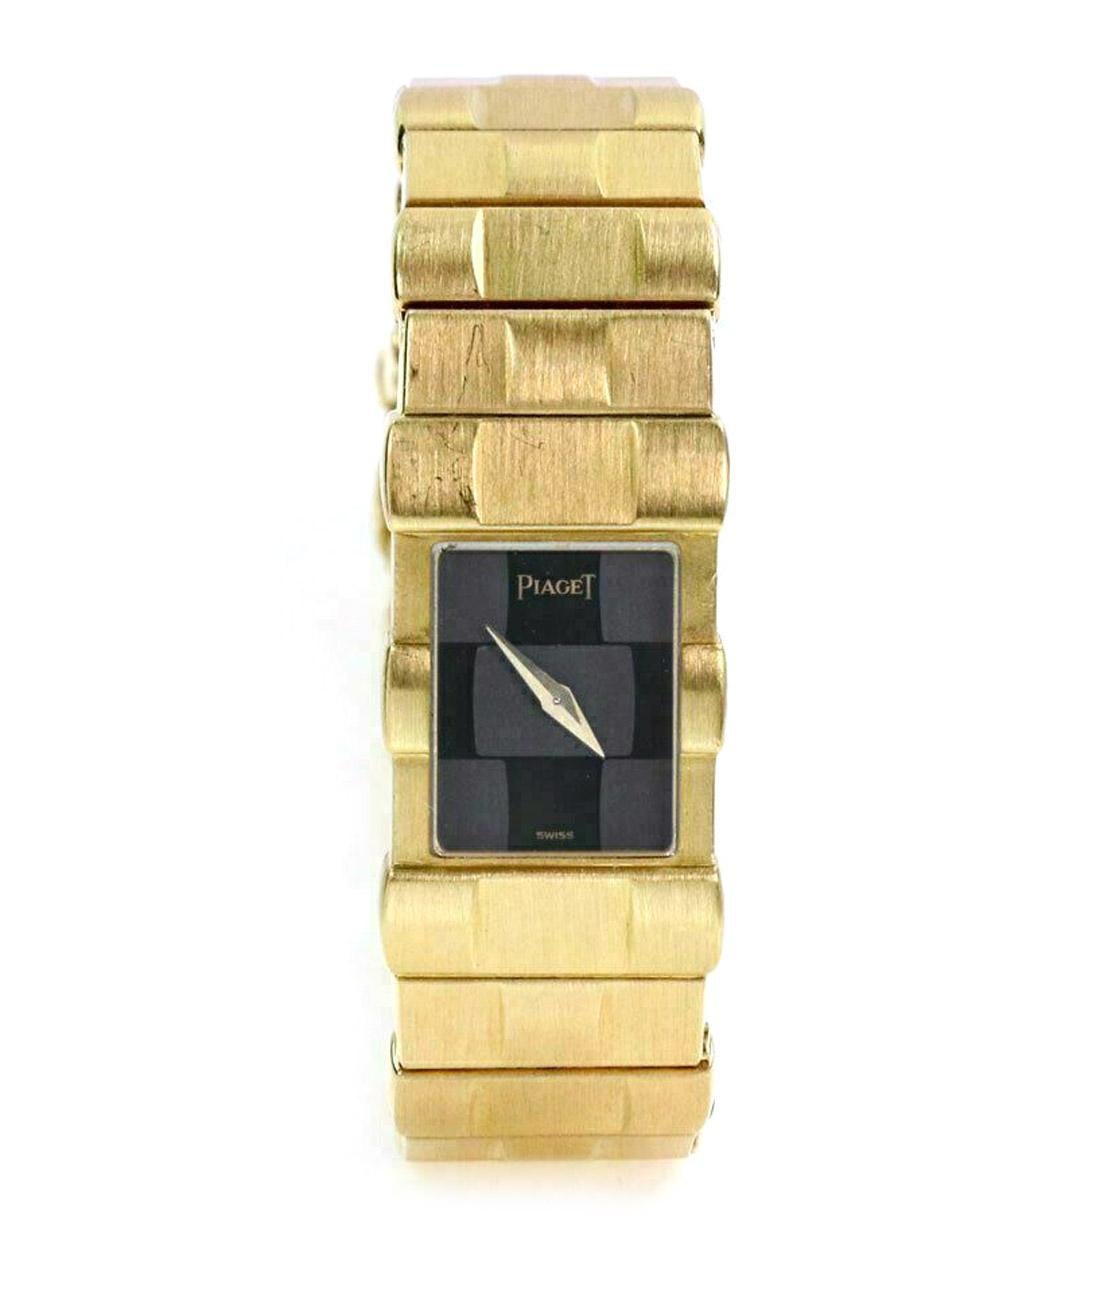 Cette élégante montre-bracelet authentique pour femme est signée Piaget et fait partie de la collection POLO. Le boîtier et le bracelet sont en or jaune massif 18 carats, avec un joli bracelet à maillons en or massif, un cadran noir et des aiguilles